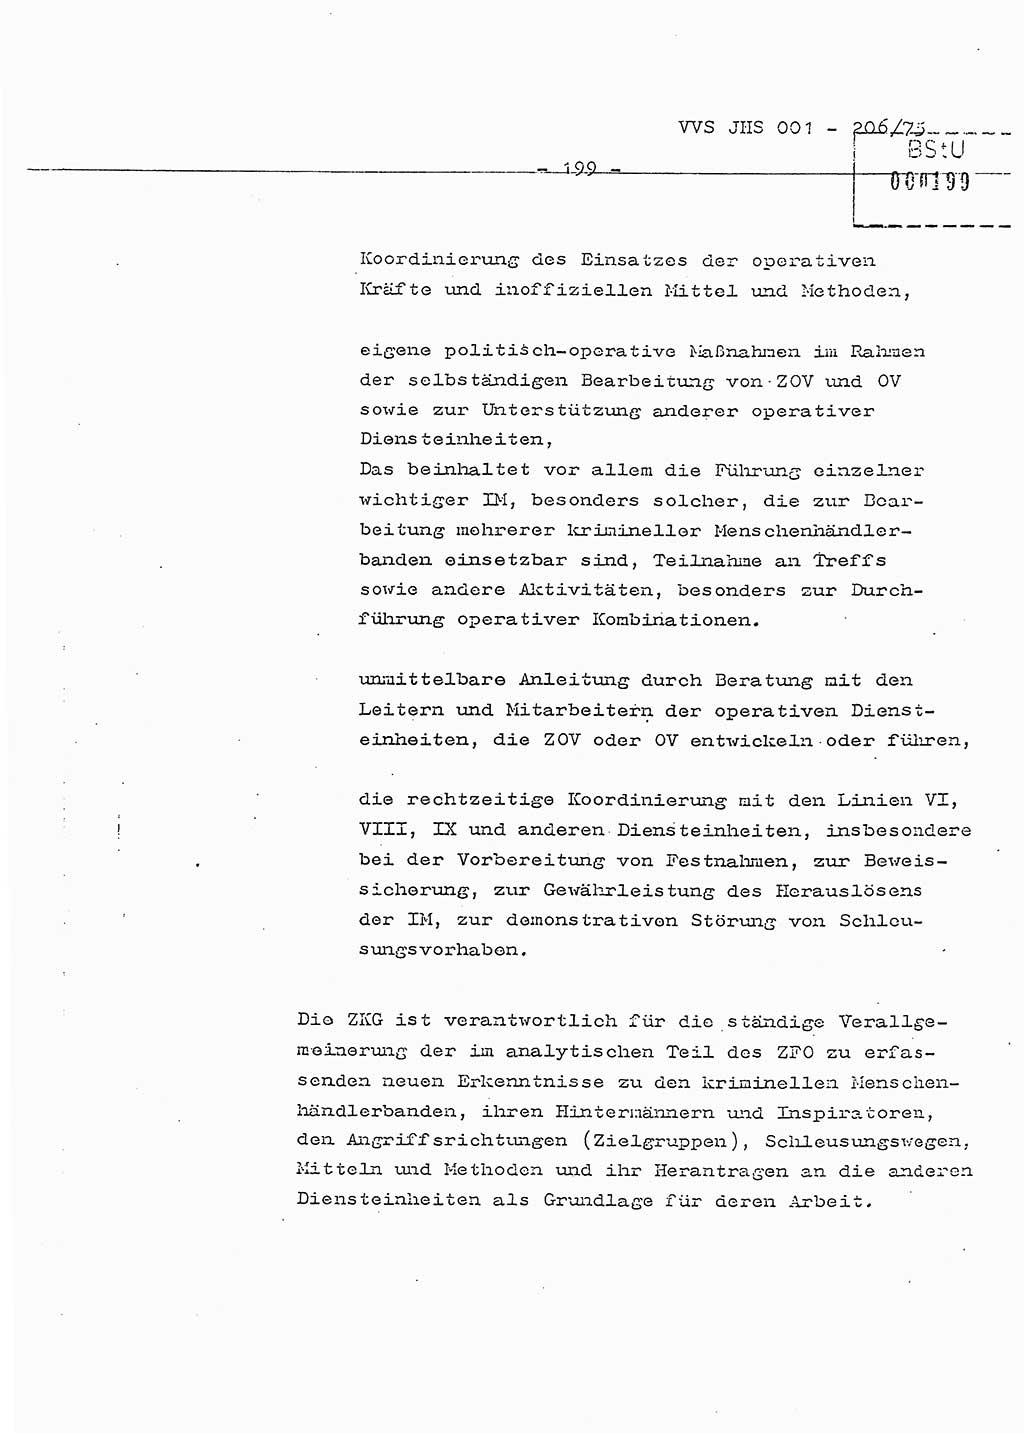 Dissertation Generalmajor Manfred Hummitzsch (Leiter der BV Leipzig), Generalmajor Heinz Fiedler (HA Ⅵ), Oberst Rolf Fister (HA Ⅸ), Ministerium für Staatssicherheit (MfS) [Deutsche Demokratische Republik (DDR)], Juristische Hochschule (JHS), Vertrauliche Verschlußsache (VVS) 001-206/75, Potsdam 1975, Seite 199 (Diss. MfS DDR JHS VVS 001-206/75 1975, S. 199)